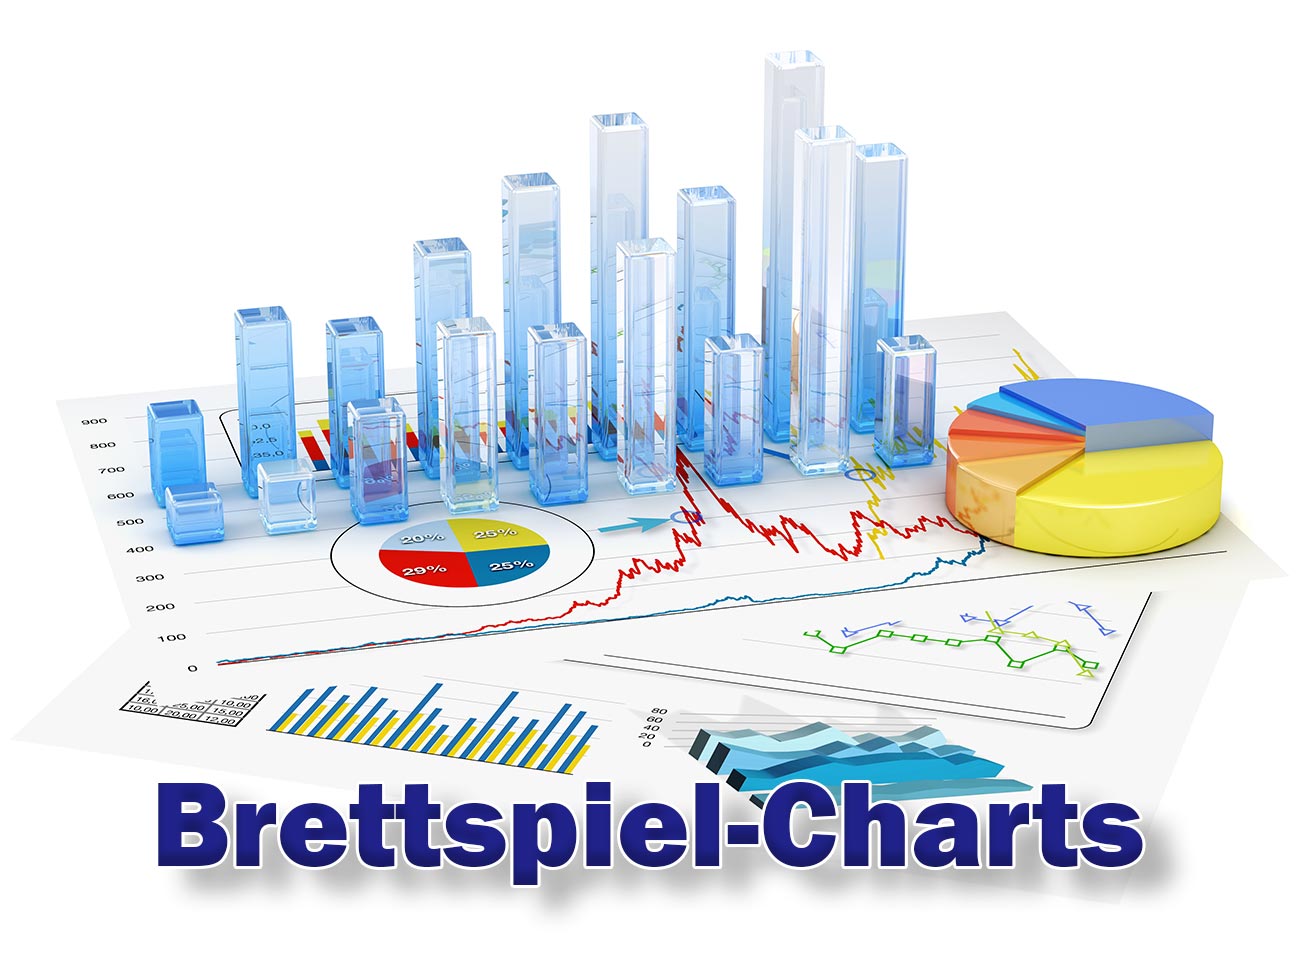 Brettspiel-Charts 